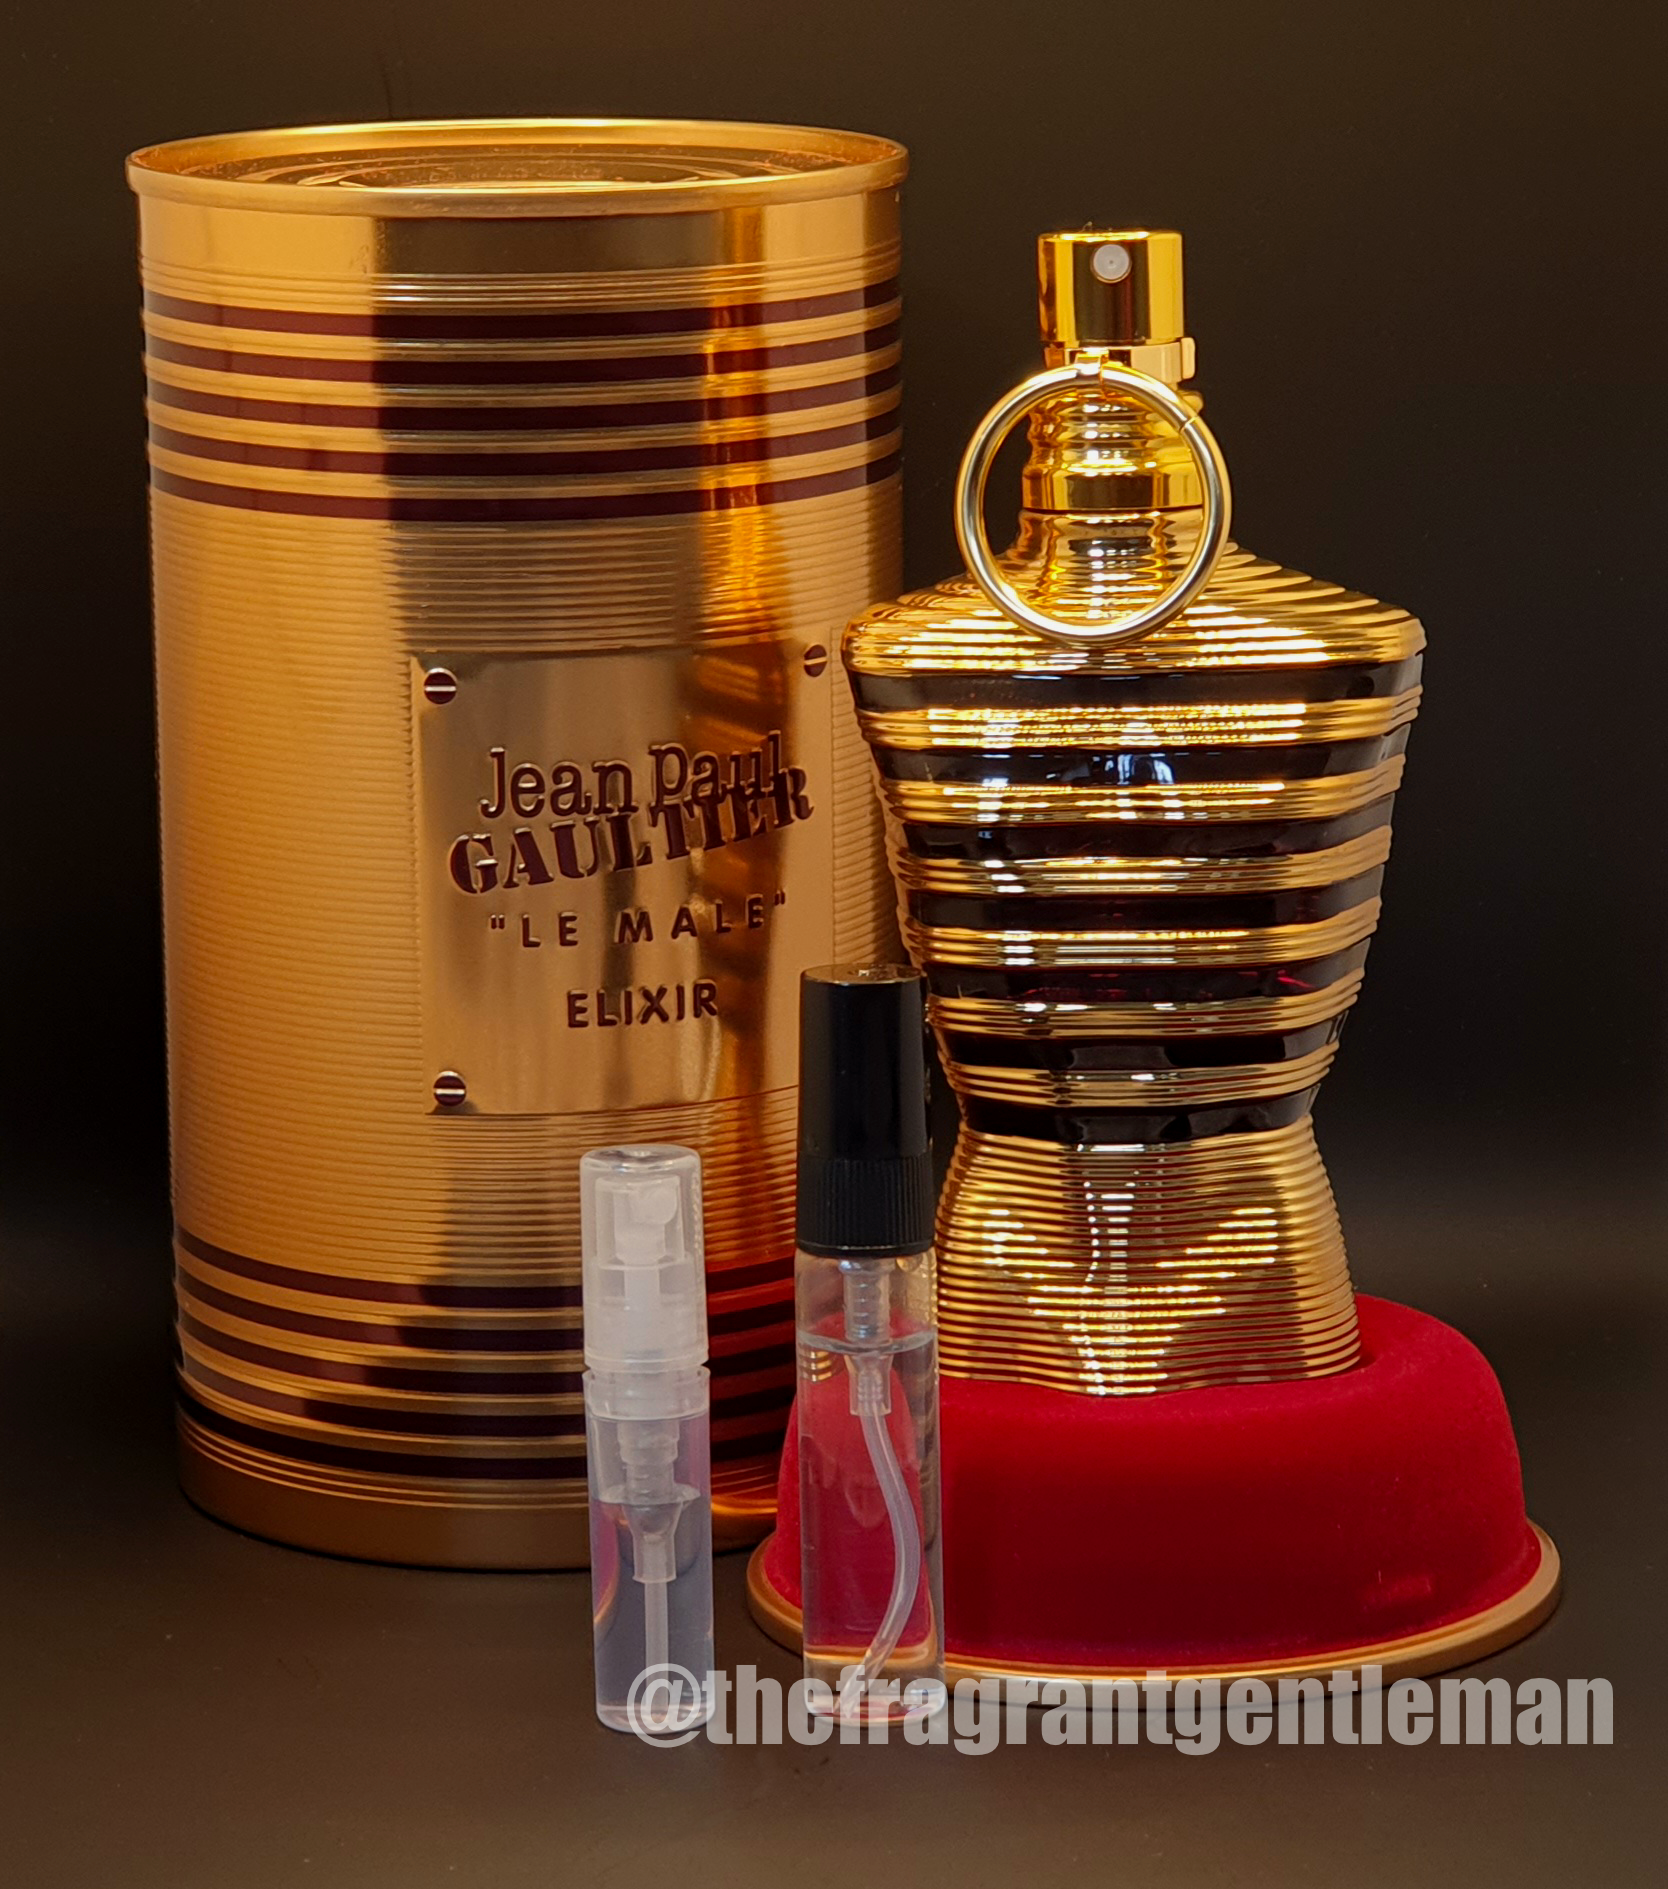 Jean Paul Gaultier Le Male Elixir Cologne Decant Sample – perfUUm